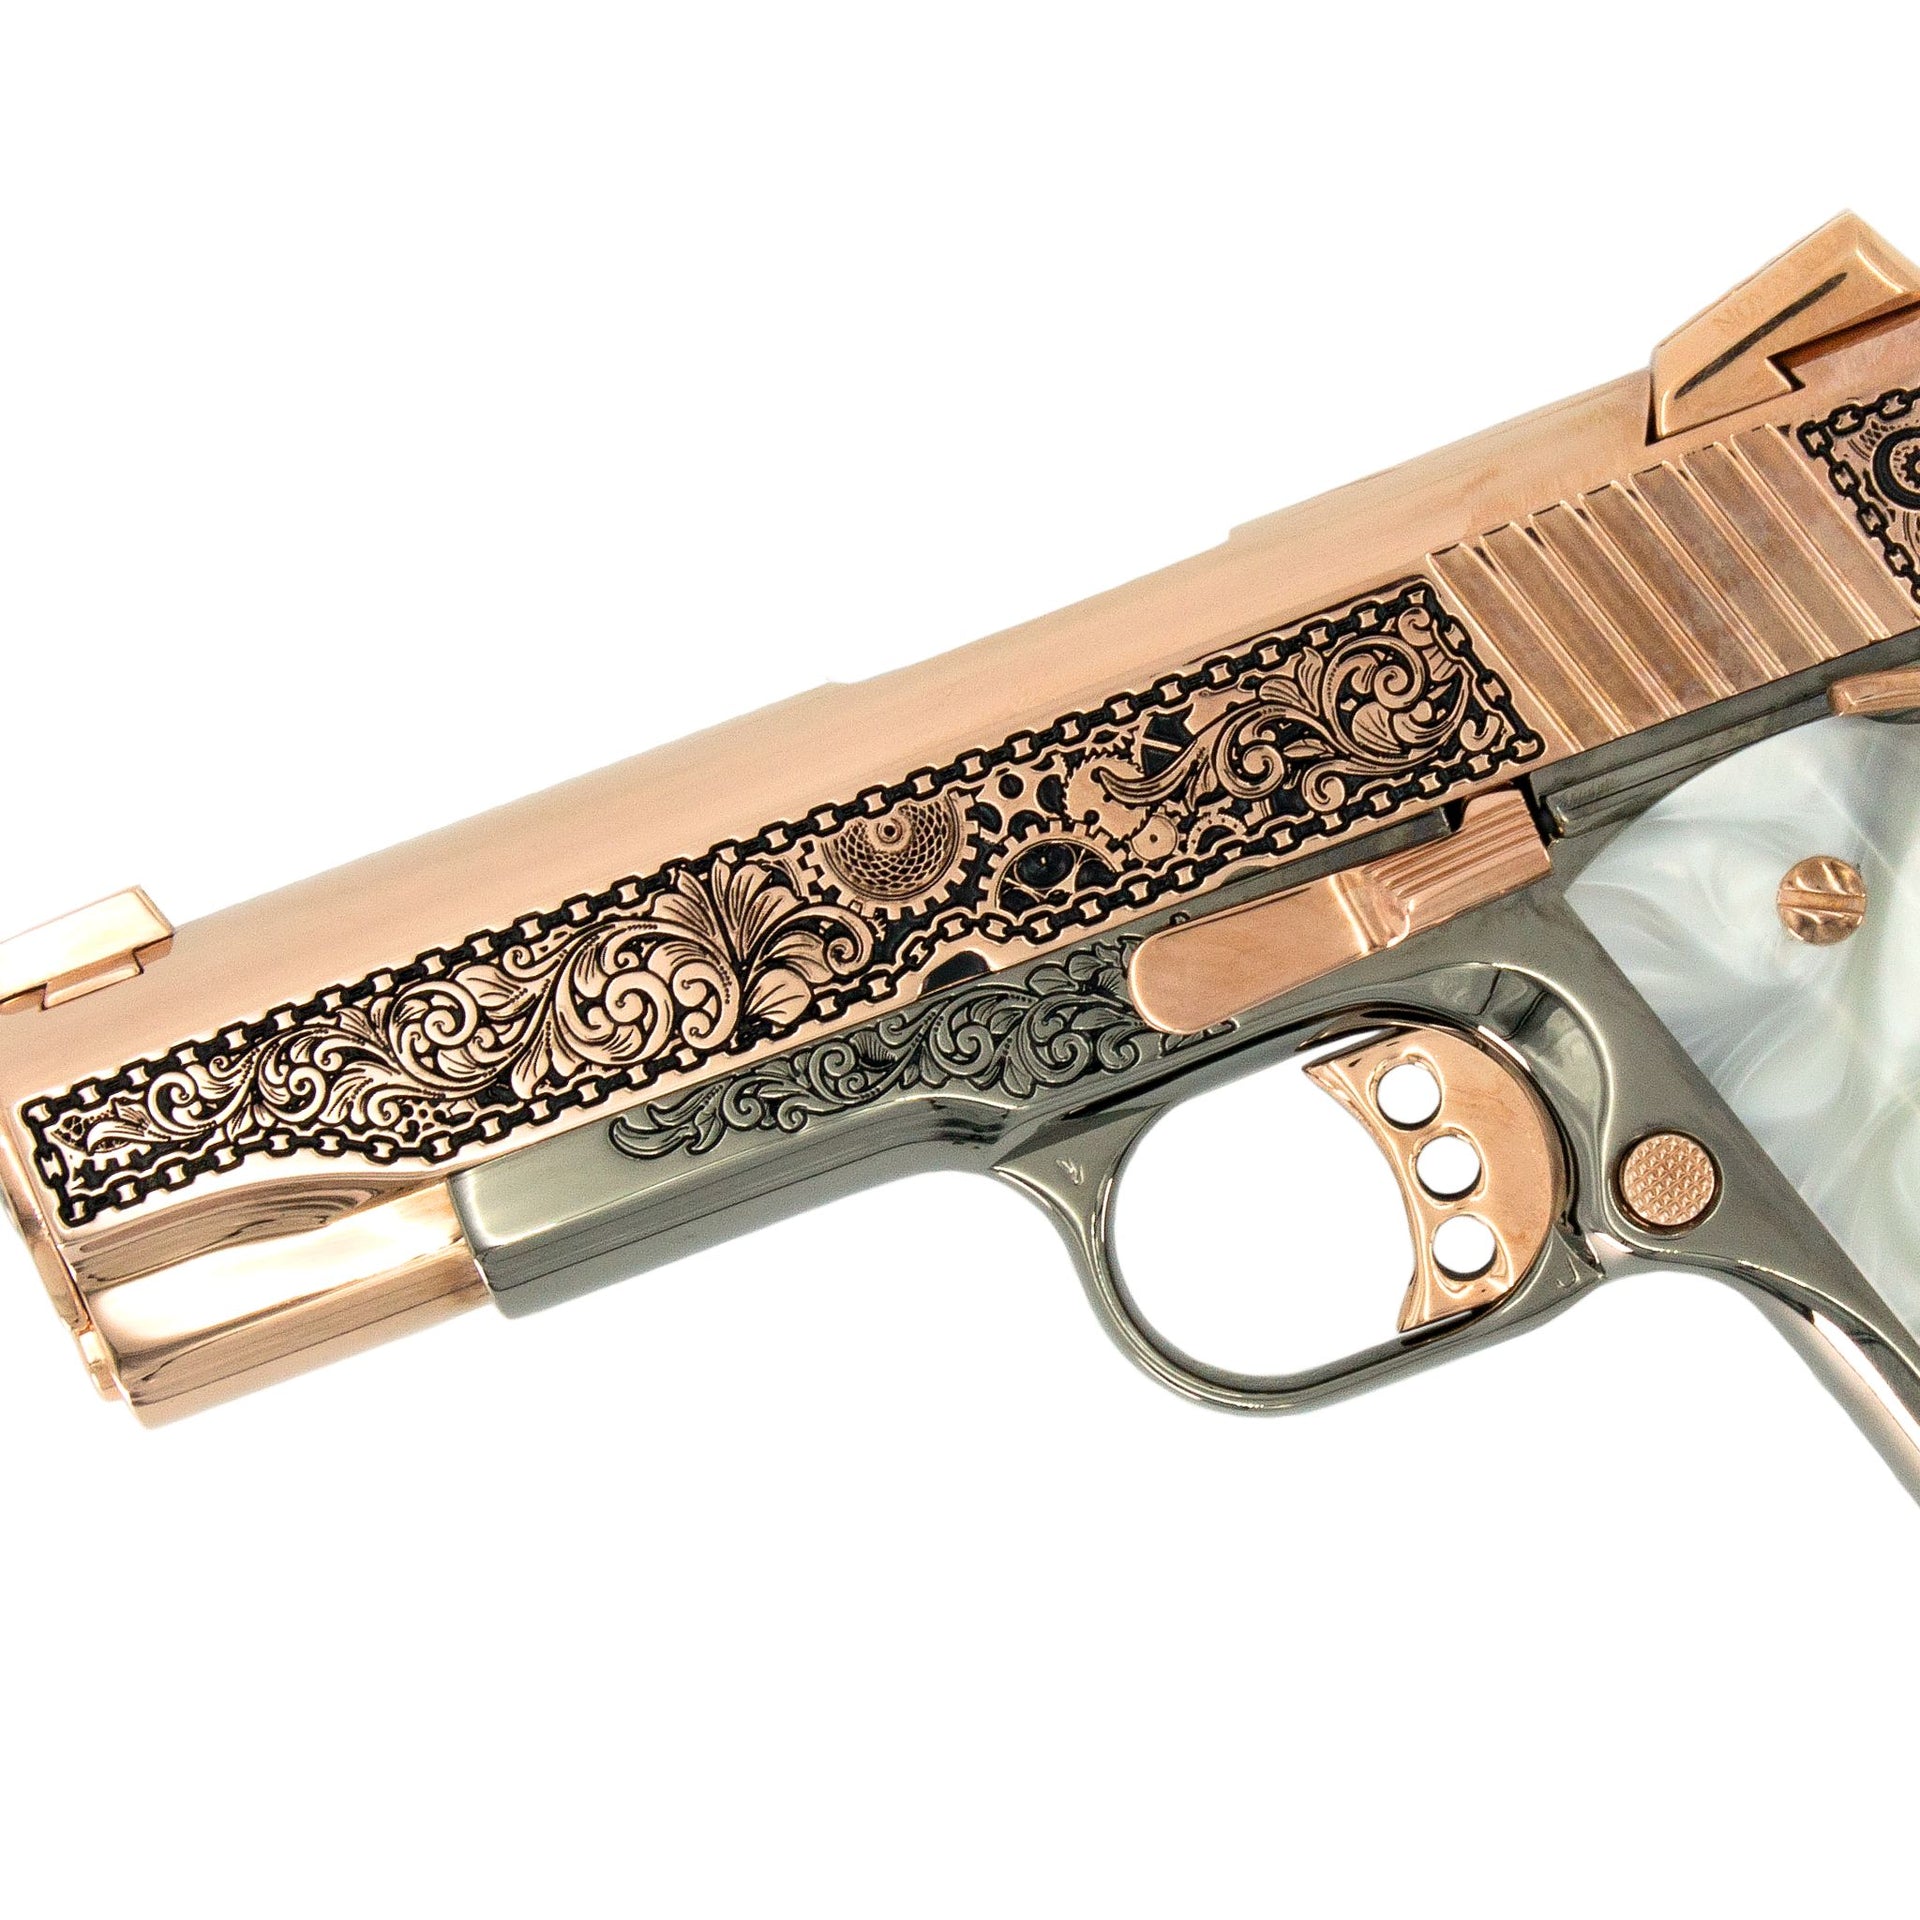 Colt 1911 Combat Commander, 45 ACP,  Engraved In High Polish 18 karat Rose Gold Plated and Black Chrome Clockwork Design, SKU: 7010463121510, Rose Gold Gun, Rose Gold Firearm, Engraved Firearm  